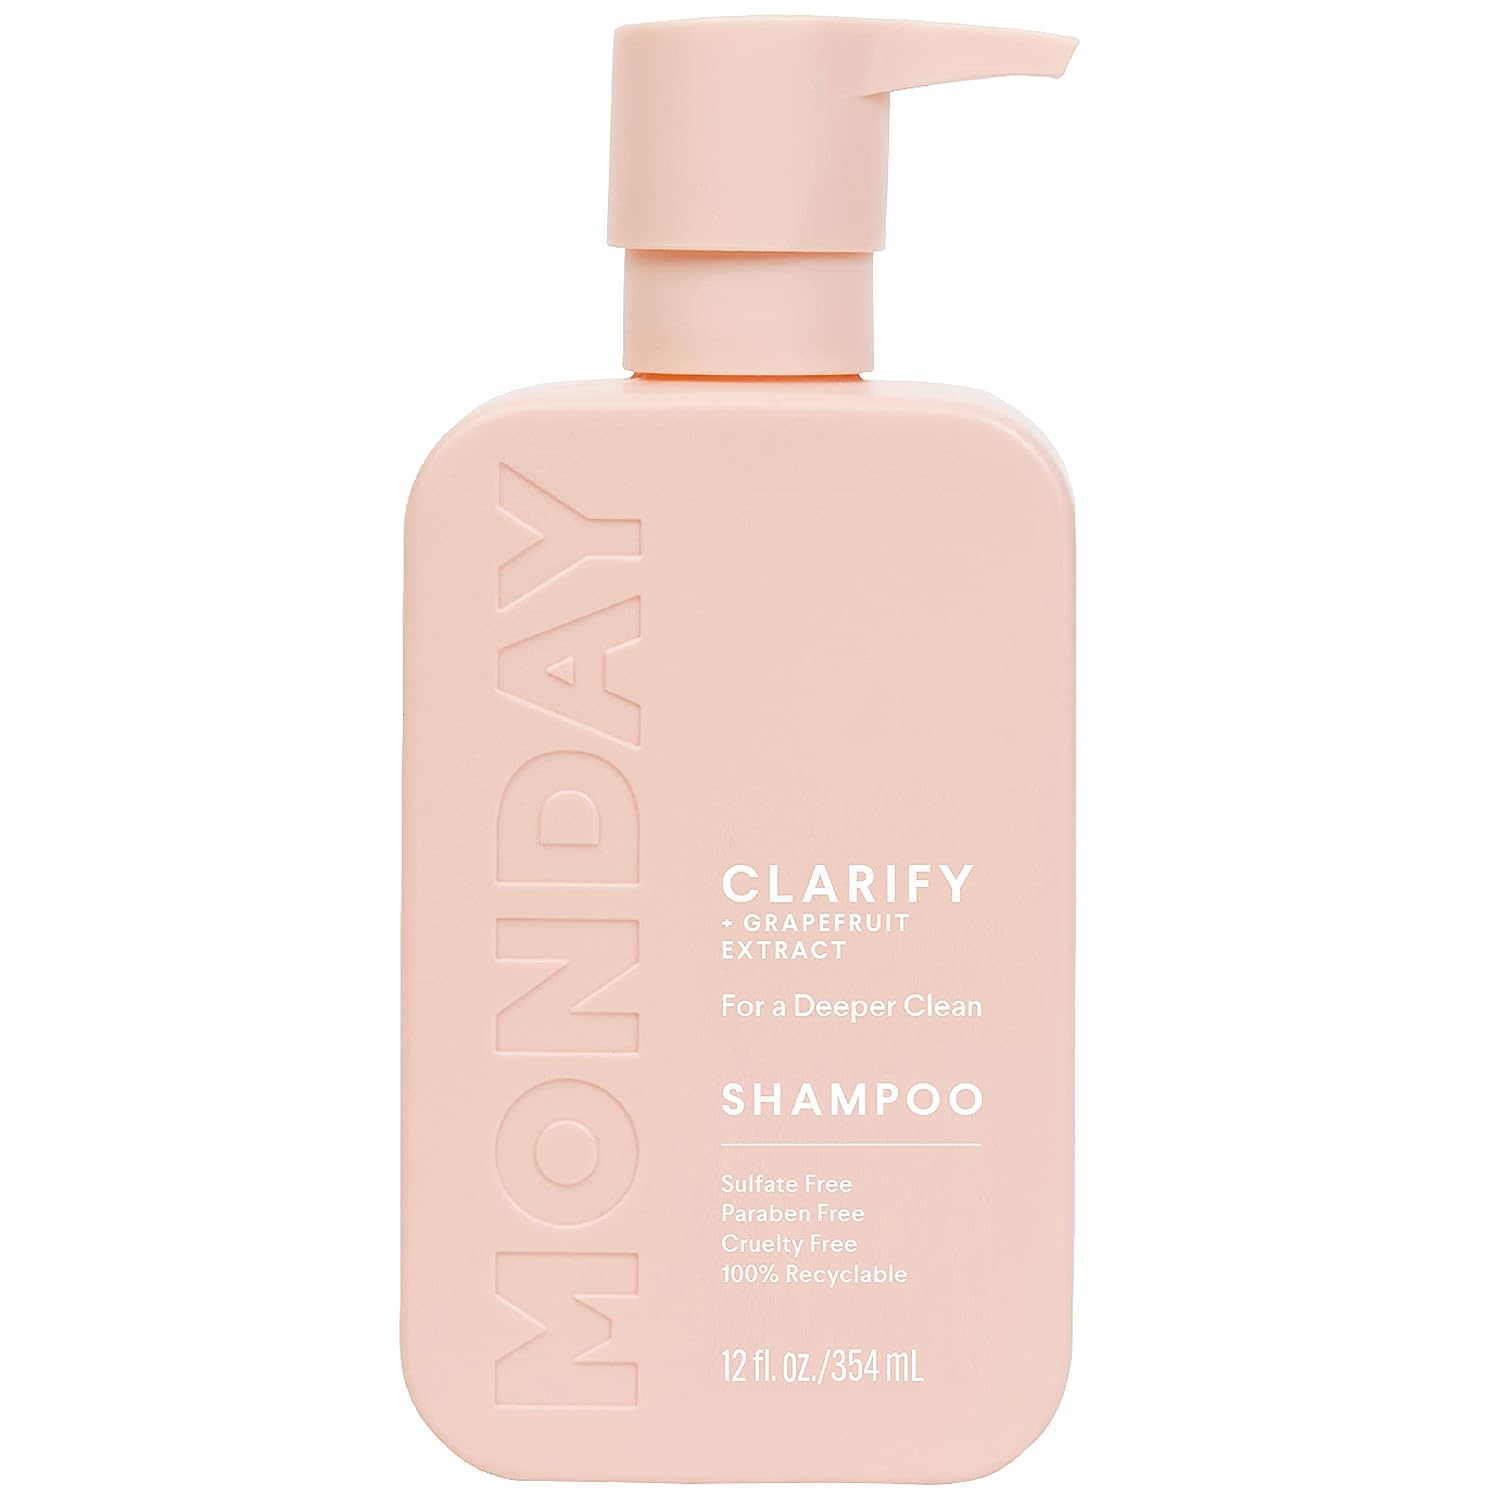 MONDAY HAIRCARE Clarify Shampoo 12oz for Oily Hair, [...]